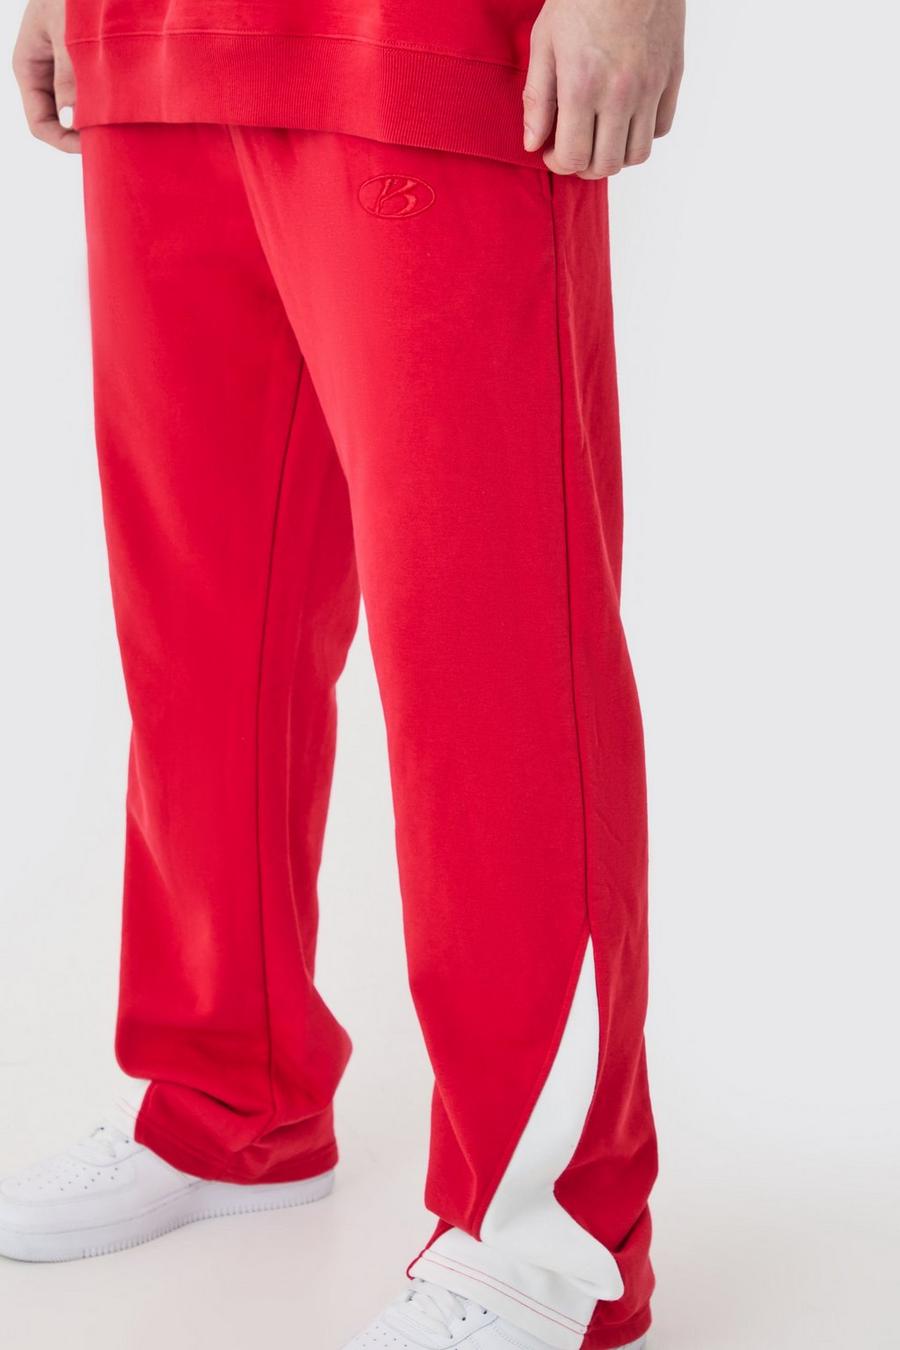 Pantalón deportivo Tall Regular grueso con refuerzo sin acabar, Red